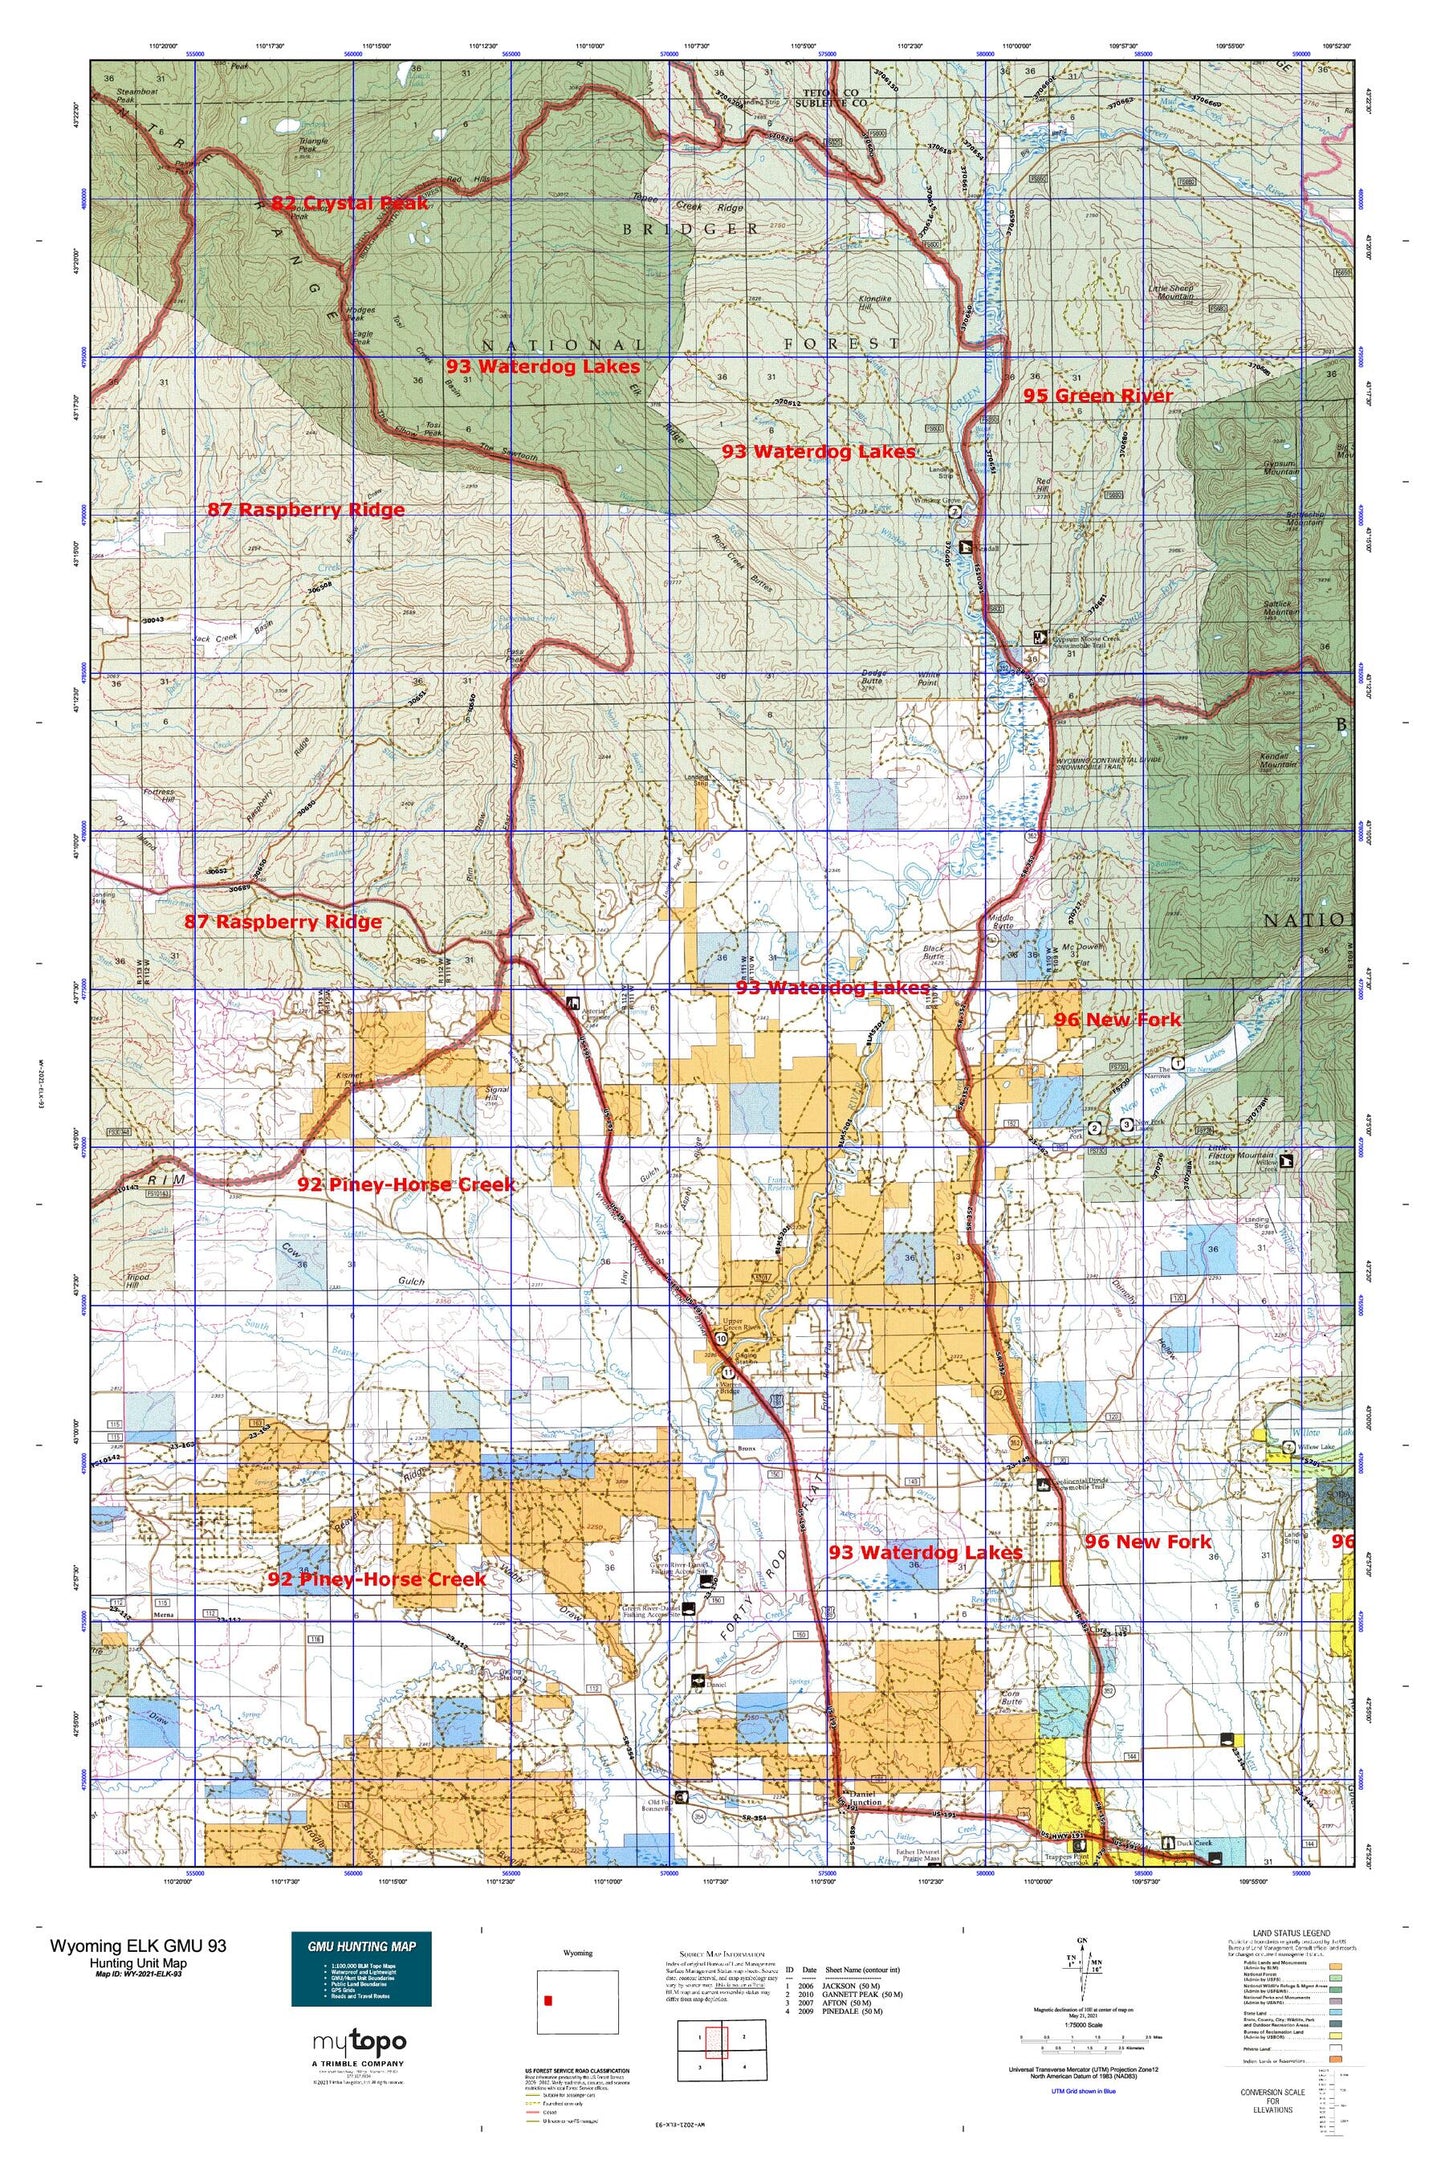 Wyoming Elk GMU 93 Map Image